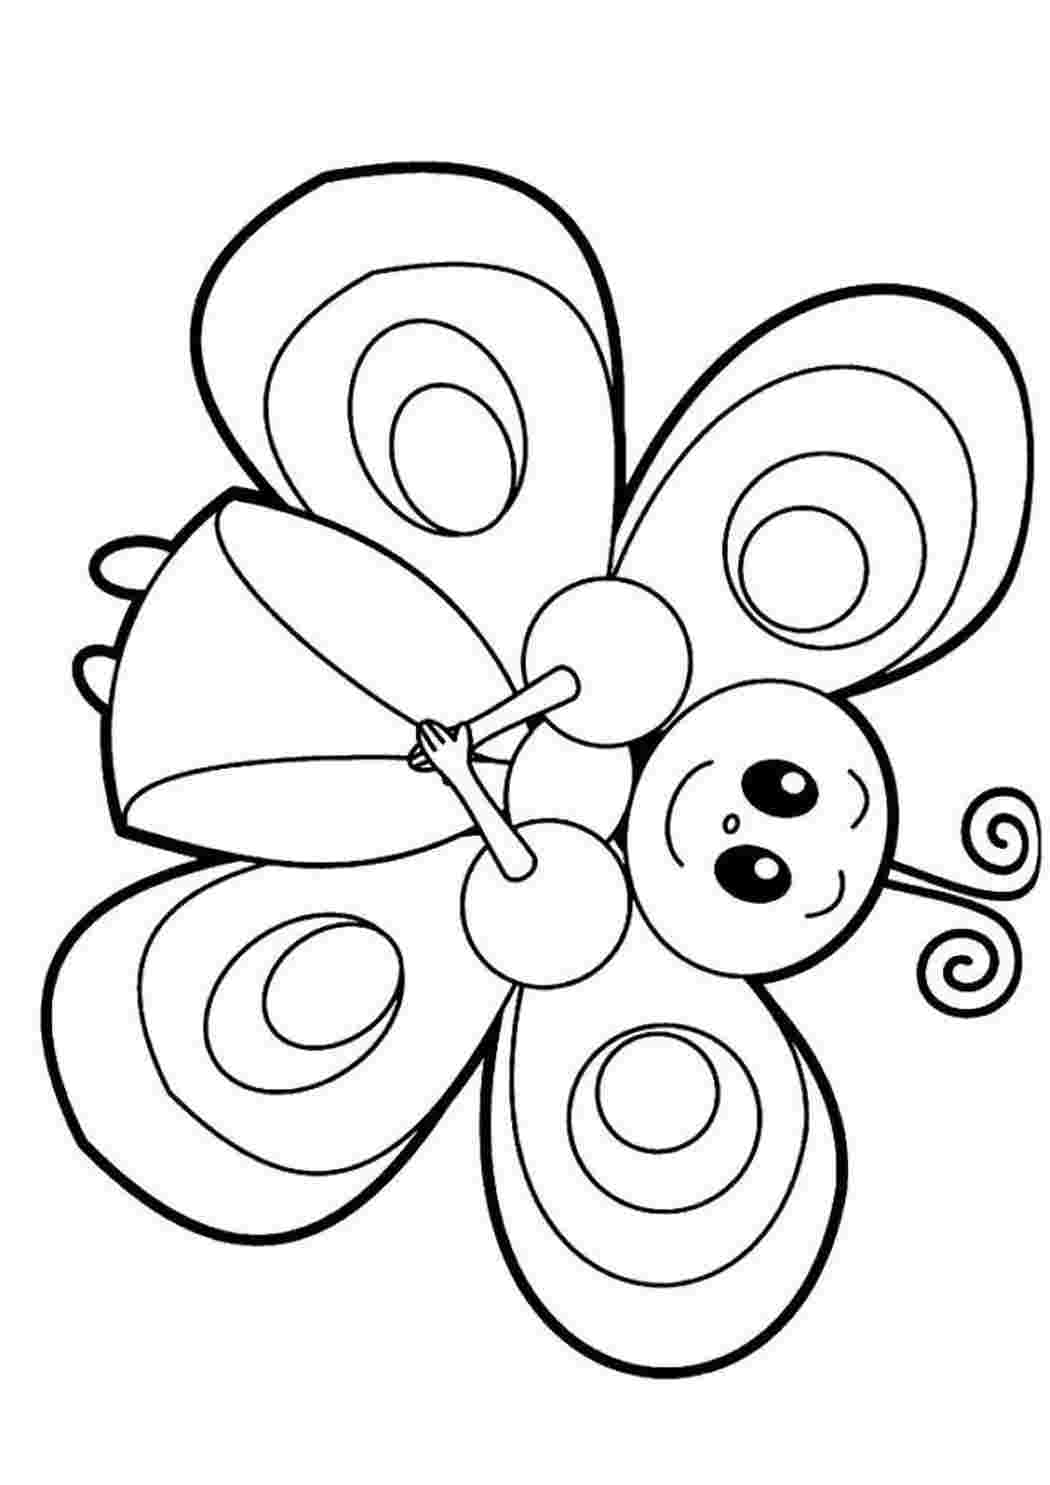 Раскраски Простая бабочка. Бесплатно найти раскраску. Простая бабочка. Раскраски для развития.